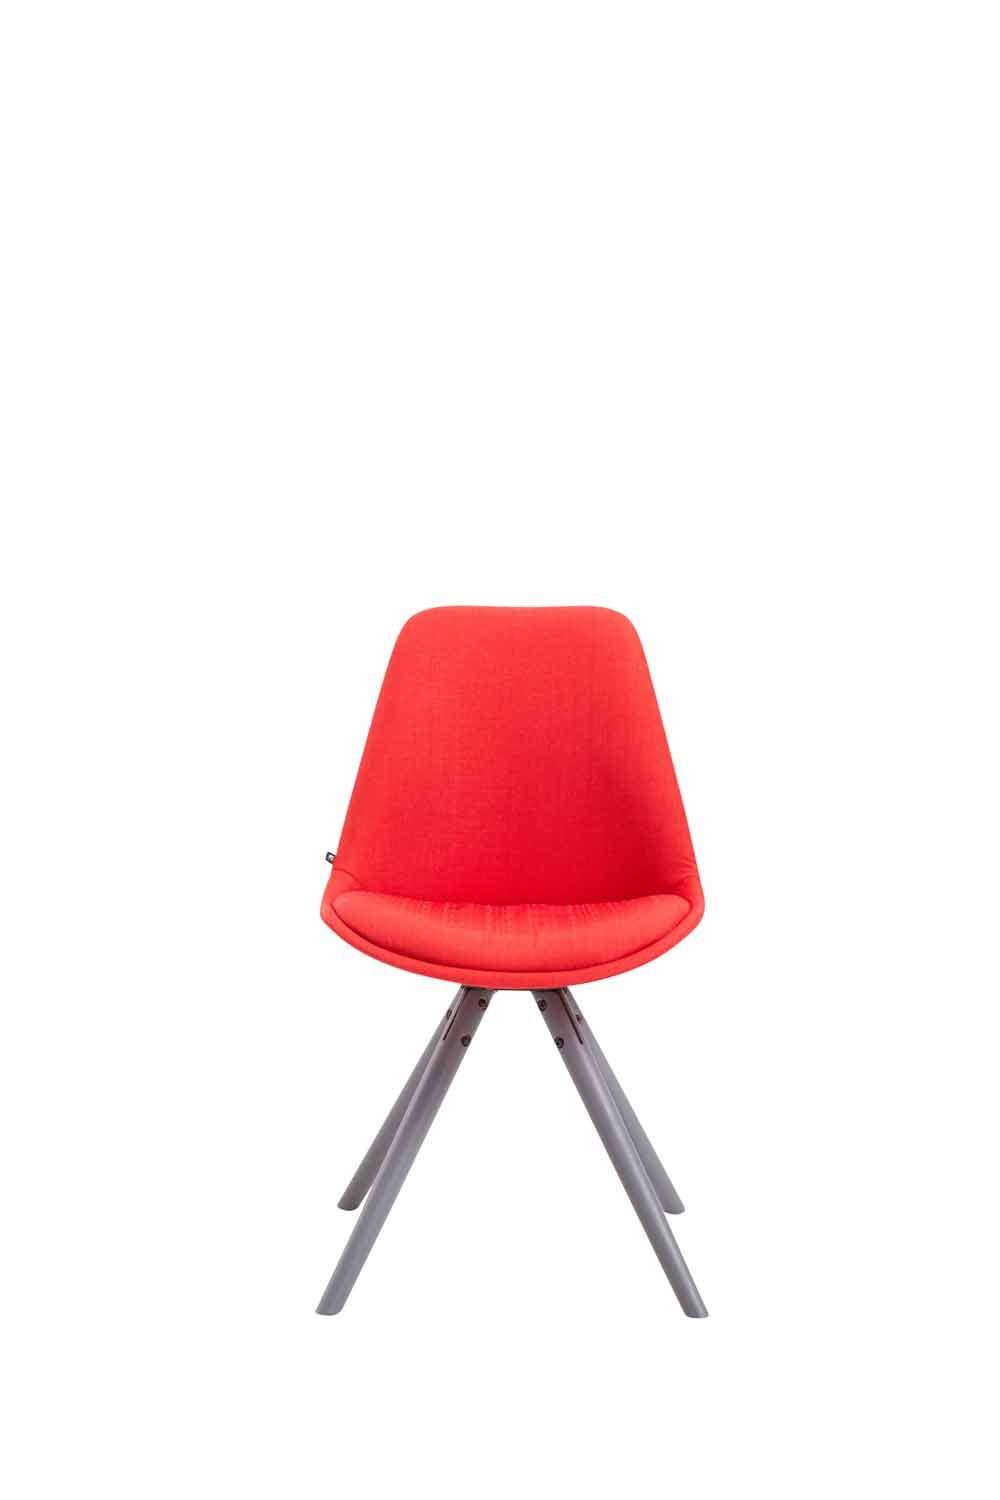 CLP Esszimmerstuhl Besucherstuhl Toulouse Stoff Rund grau, rot | Stühle